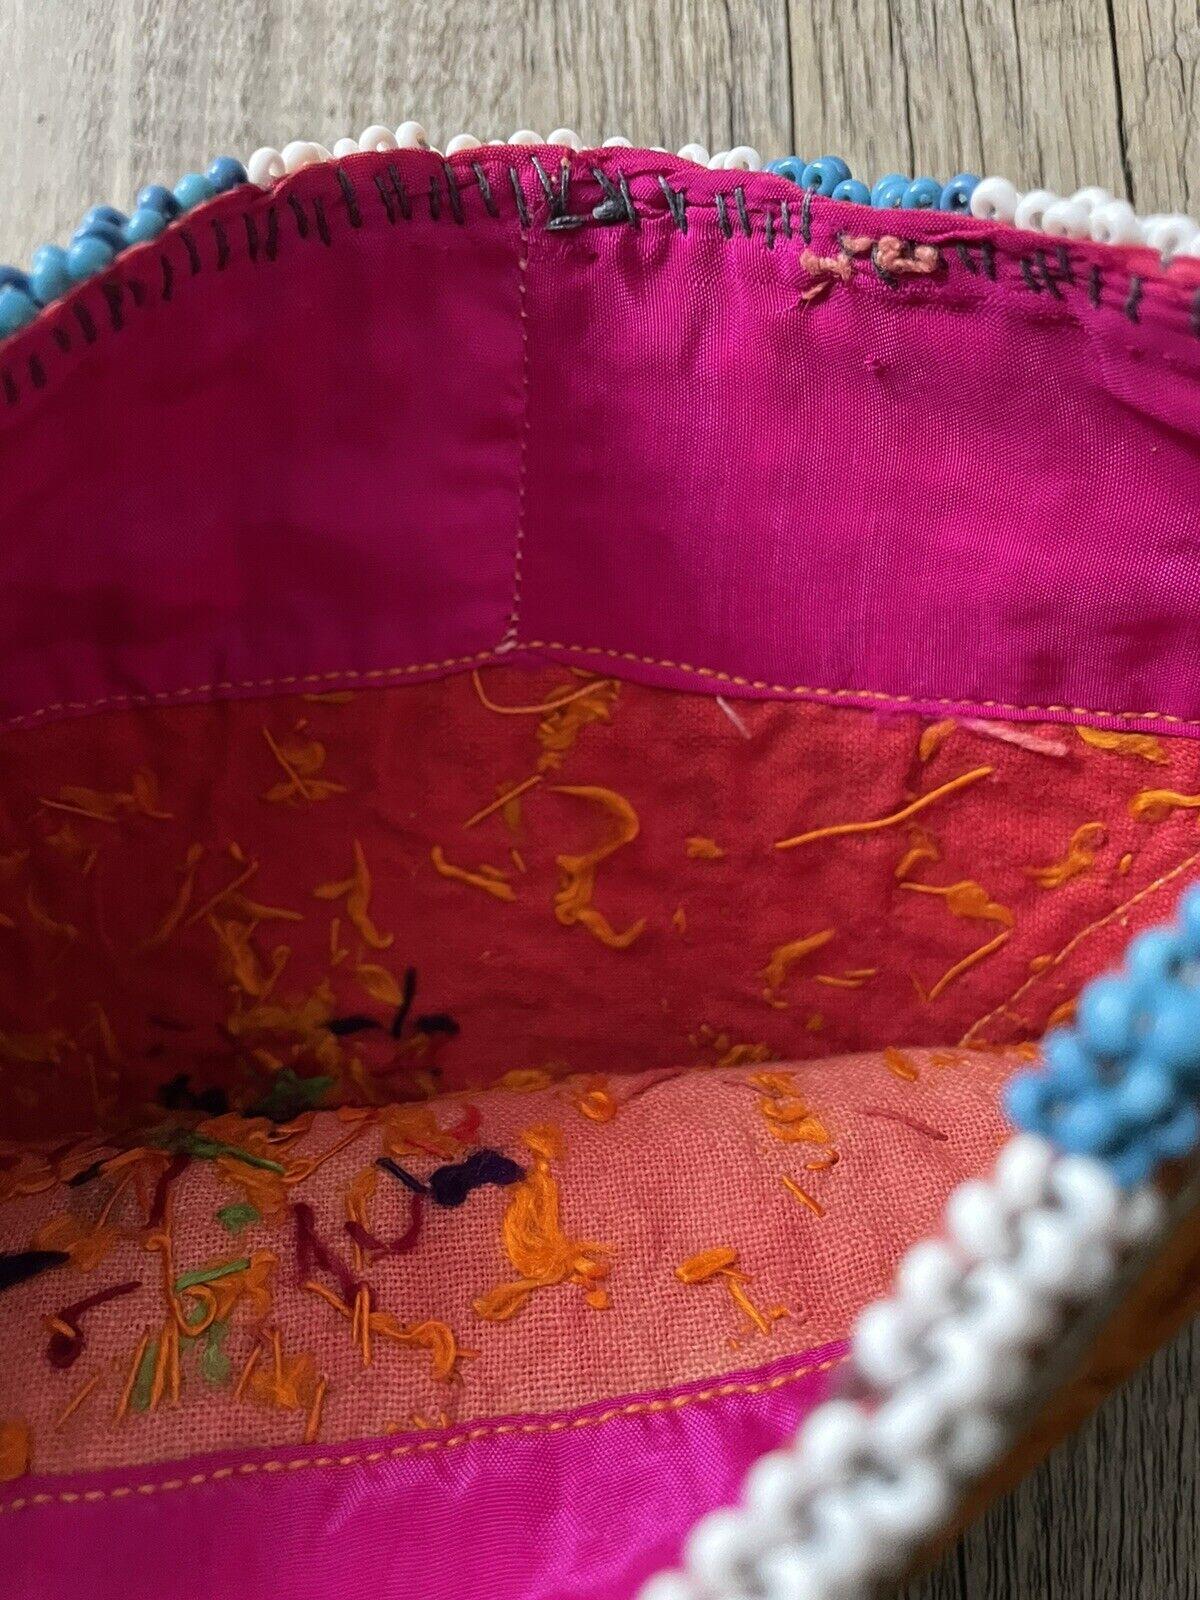 Handgefertigte antike usbekische Suzani-Sammlertasche aus den 1920er Jahren:

Design und Handwerkskunst:
Die Tasche ist ein lebhaftes Schaufenster der Suzani-Stickerei, einer klassischen zentralasiatischen Textilkunst.
Es zeigt eine Mischung aus